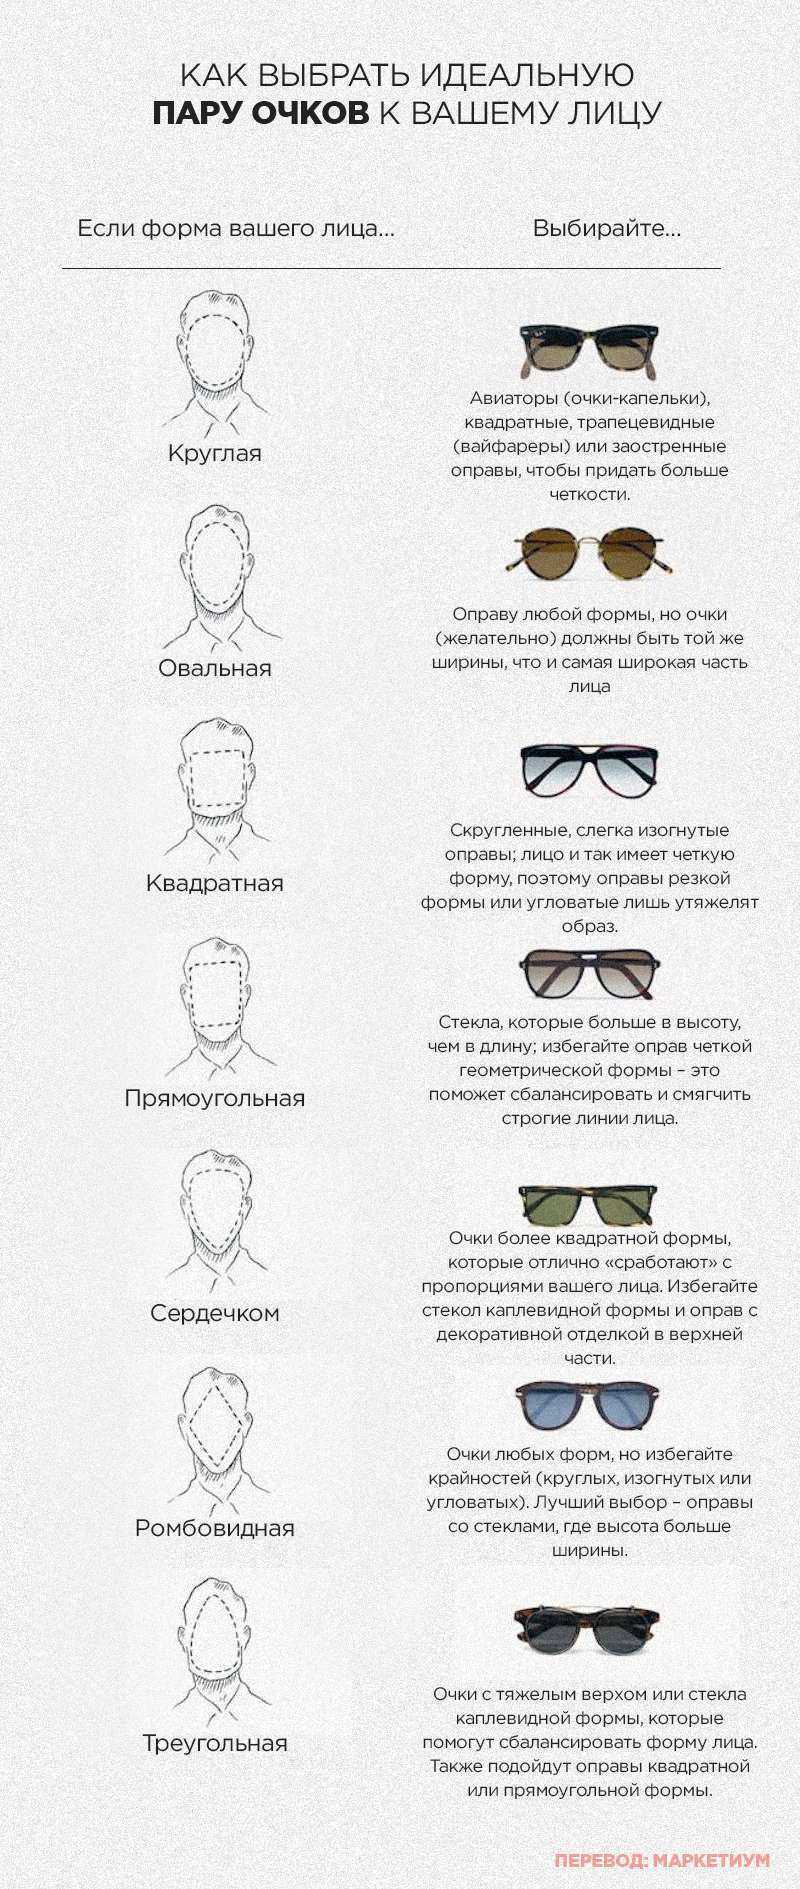 Как правильно выбрать очки по форме лица. Как правильно выбрать очки по форме лица мужчине. Как правильно выбрать солнцезащитные очки по форме лица для мужчин. Как подобрать солнечные очки по форме лица для мужчин. Как правильно выбрать солнцезащитные очки мужские по форме лица.